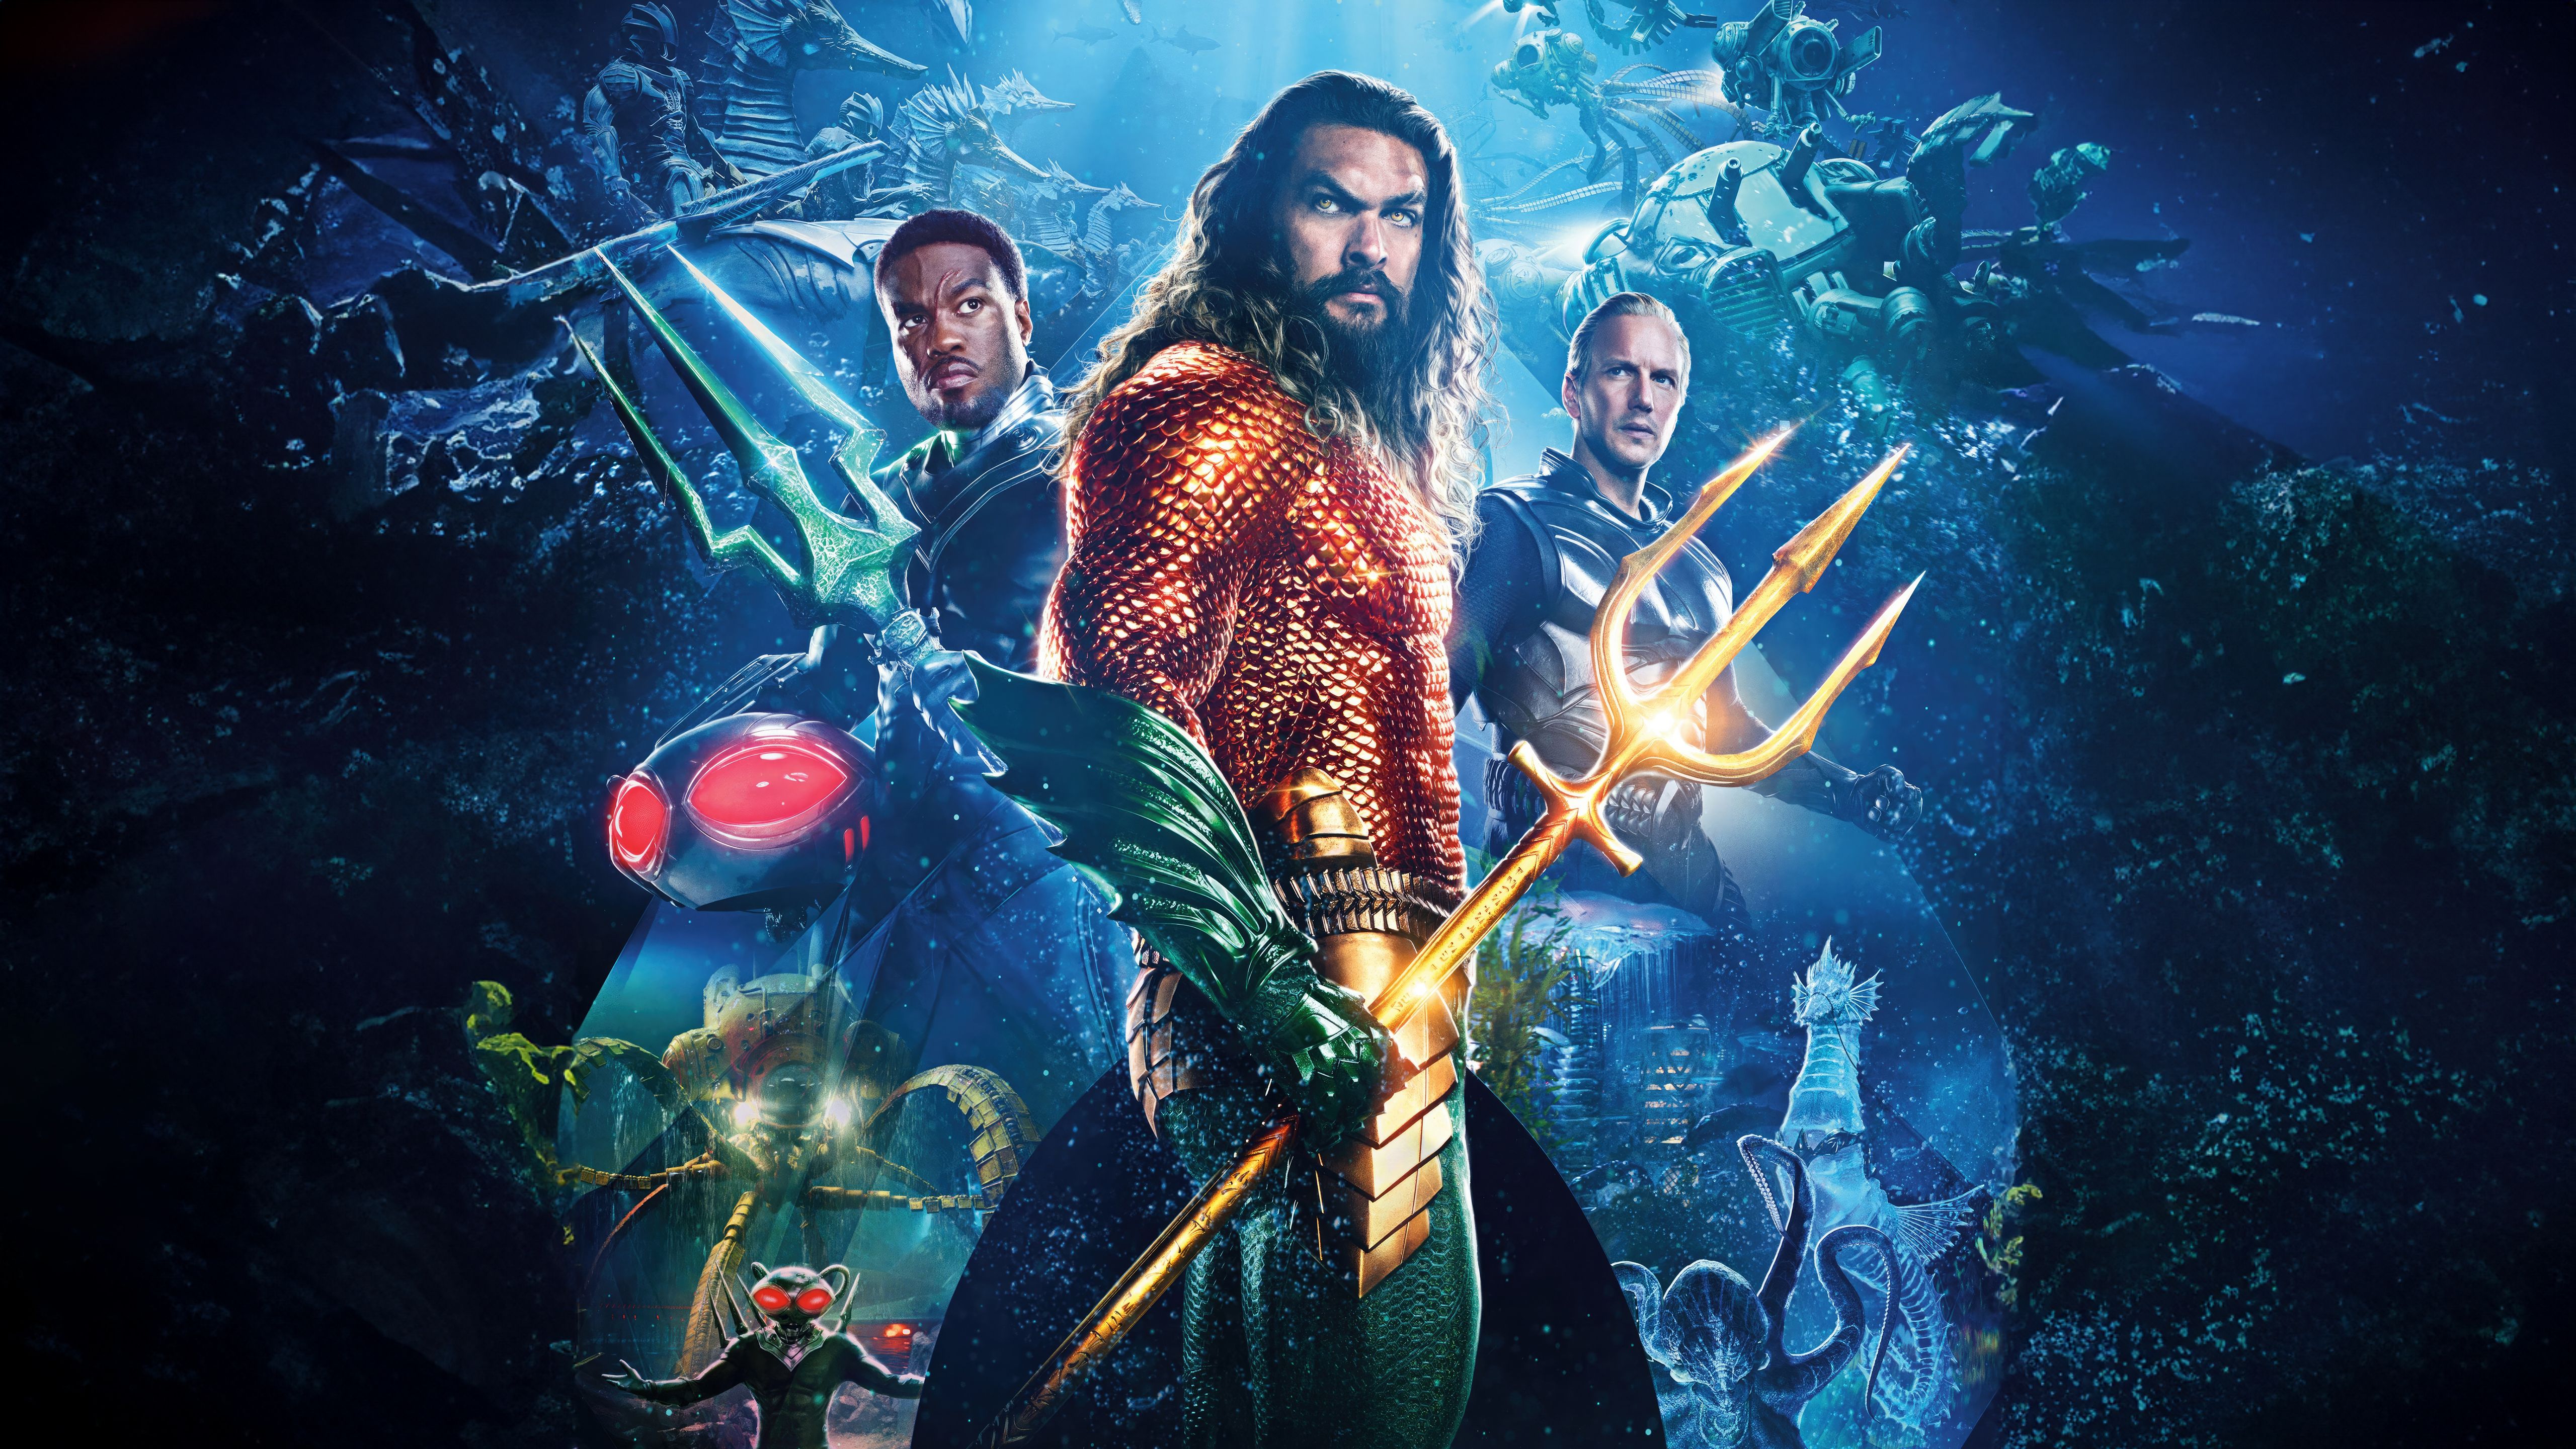  Aquaman And The Lost Kingdom Hintergrundbild 5120x2880. Aquaman and the Lost Kingdom Wallpaper 4K, Movie poster, 5K